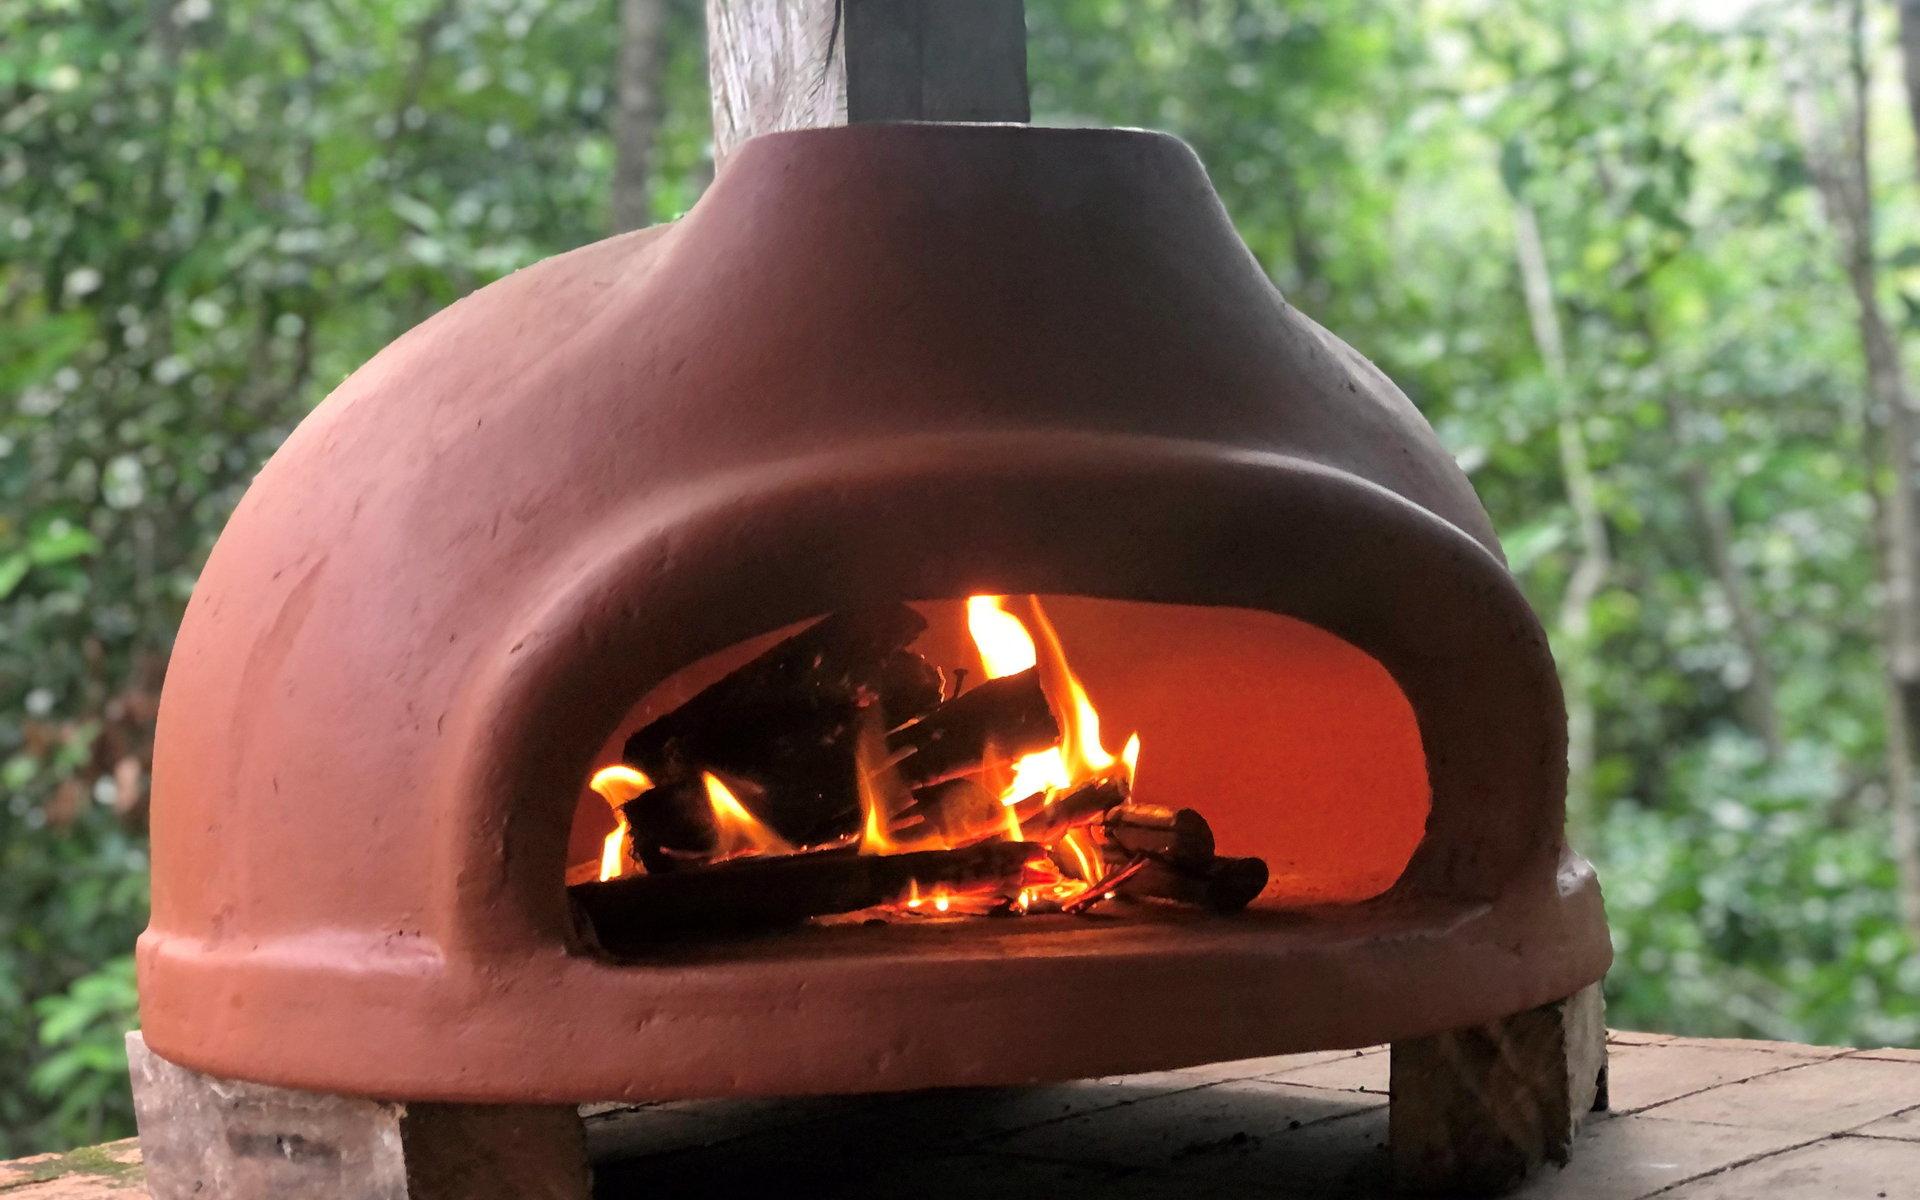 Vedugnen är handgjord i Mexiko. ”Man lägger in ved och eldar, som i en traditionell pizzaugn. Vi lagar allt möjligt där: pizza, lax, potatisgratäng, med mera. Det blir en fantastisk smak.” 